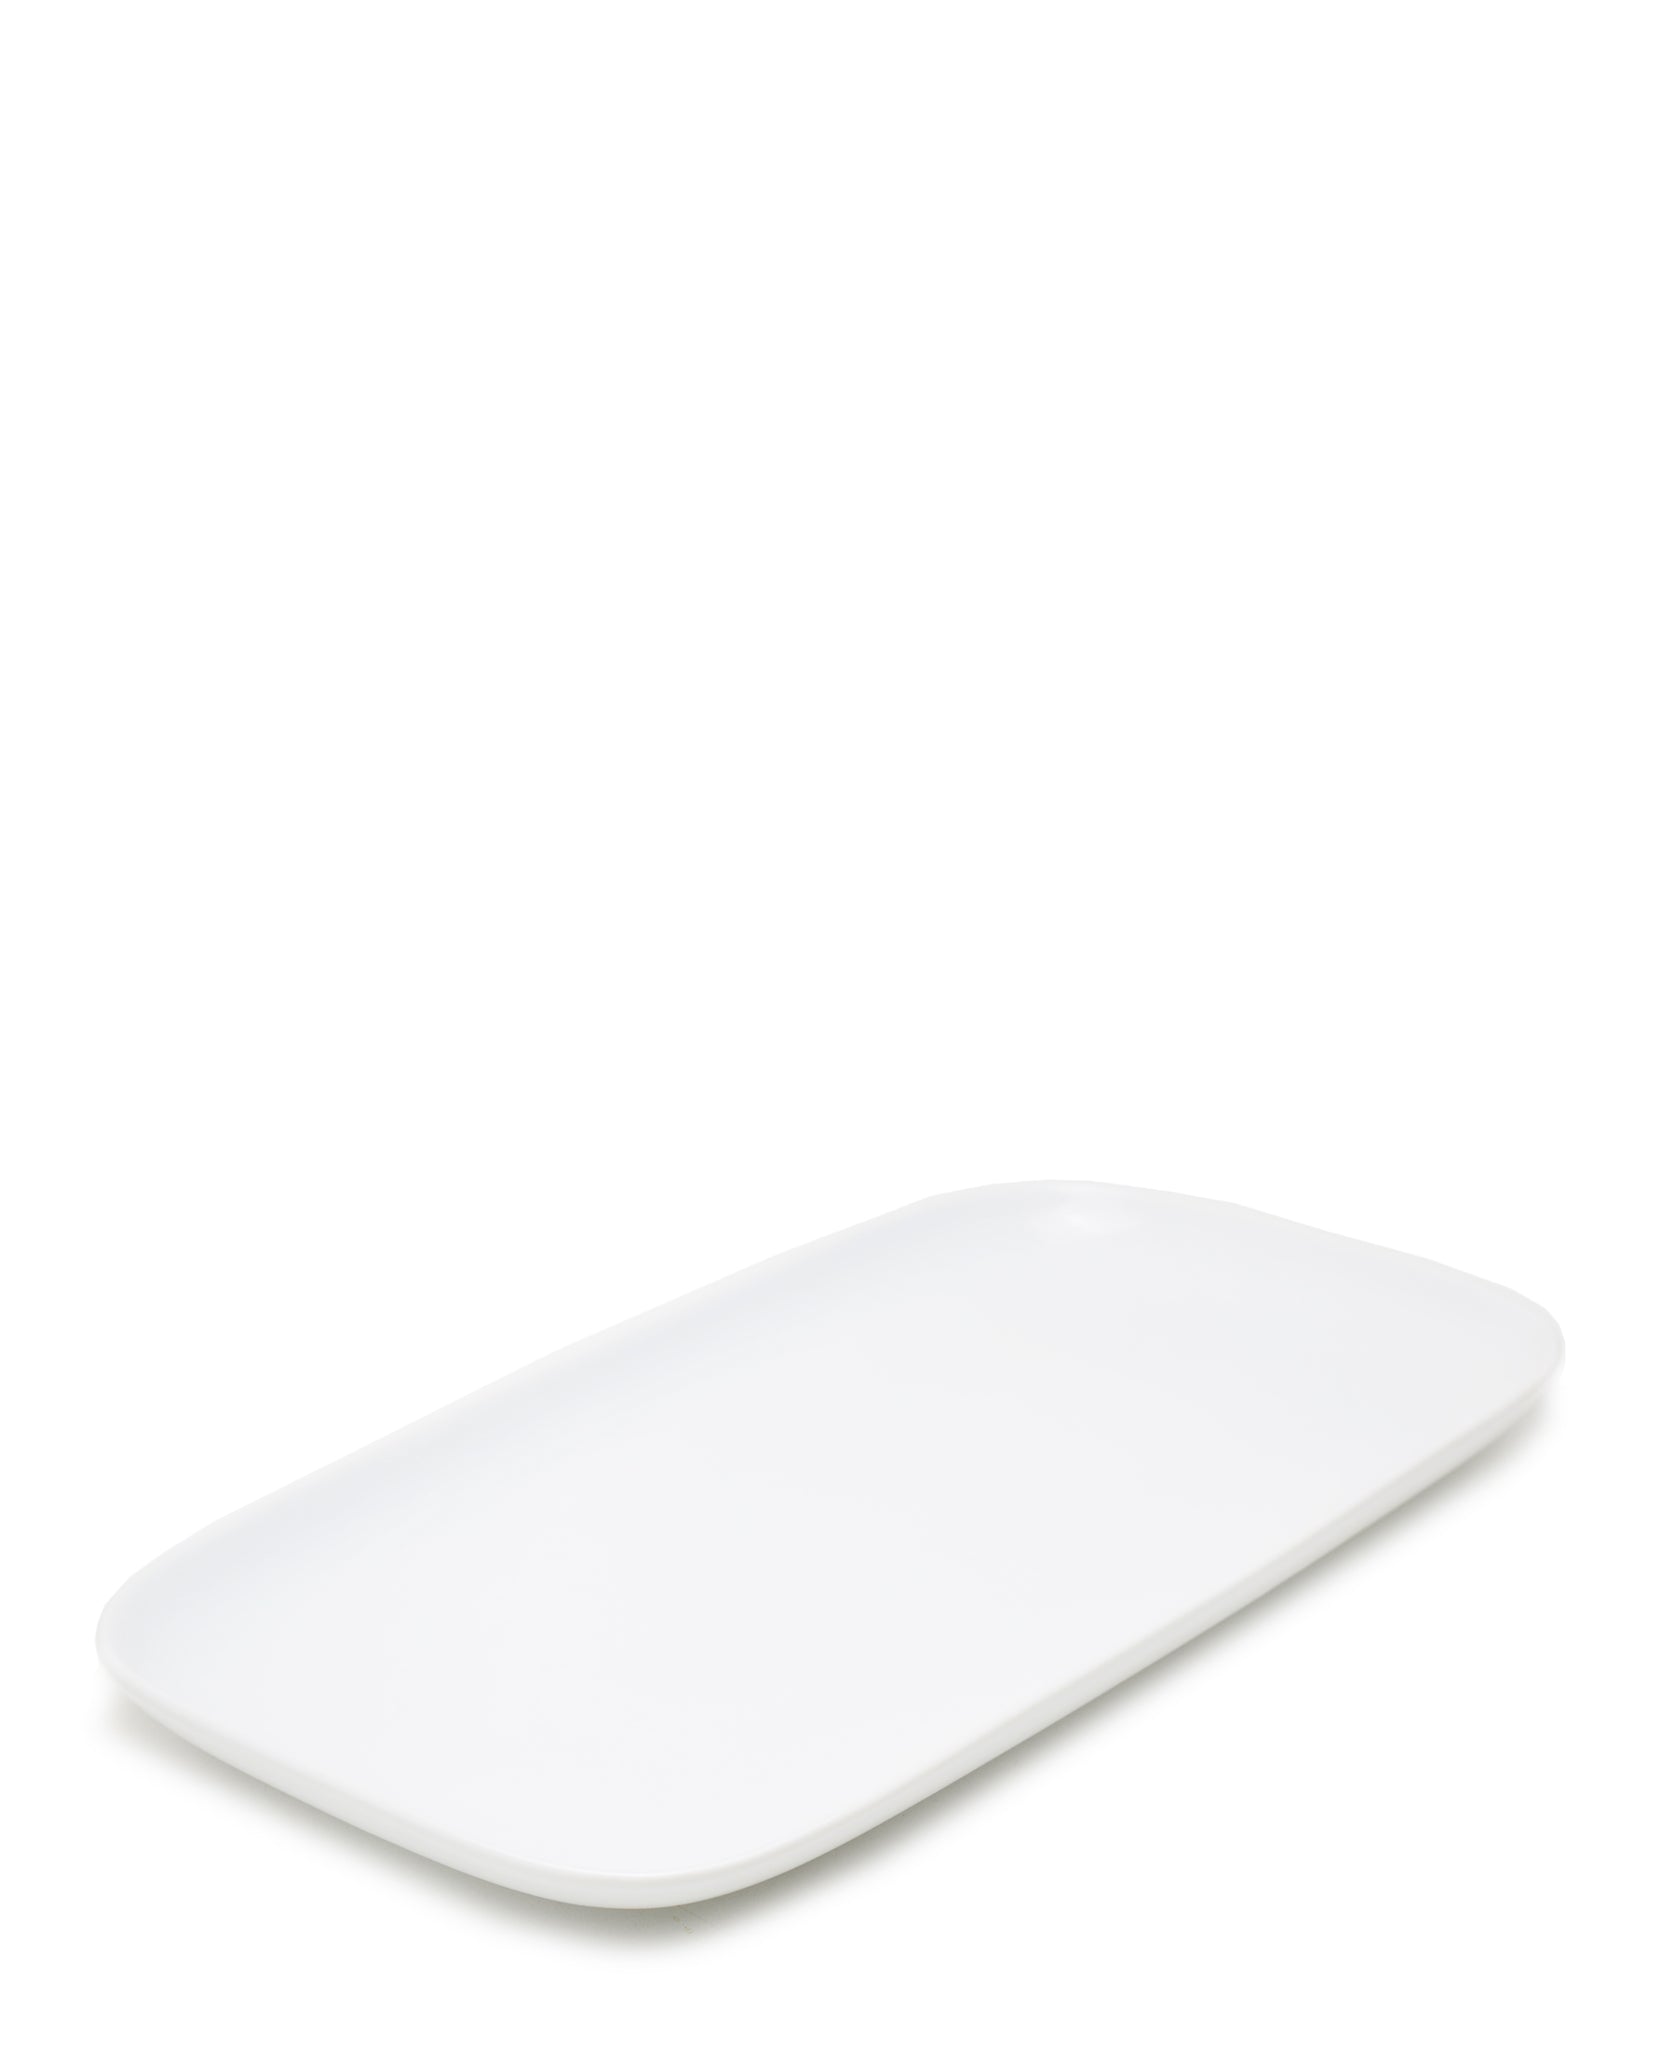 Eetrite Rectangular Platter 41cm - White